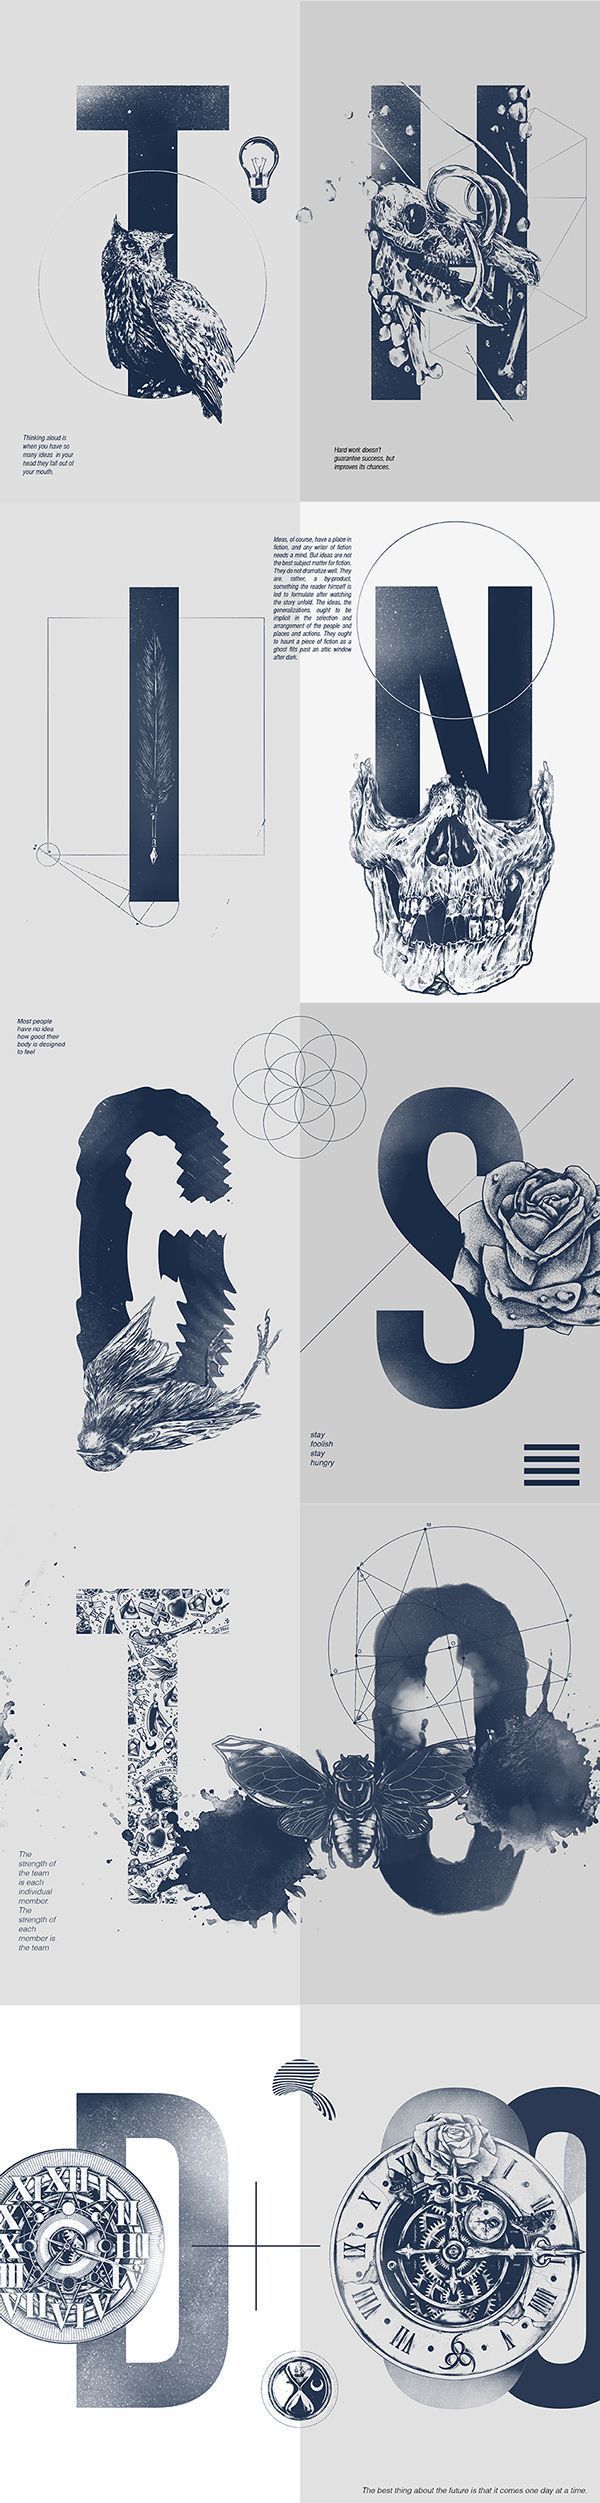 Infographic-Typographie-10-Un-caractere-creatif Infographic : Typographie #10 : Un caractère créatif !